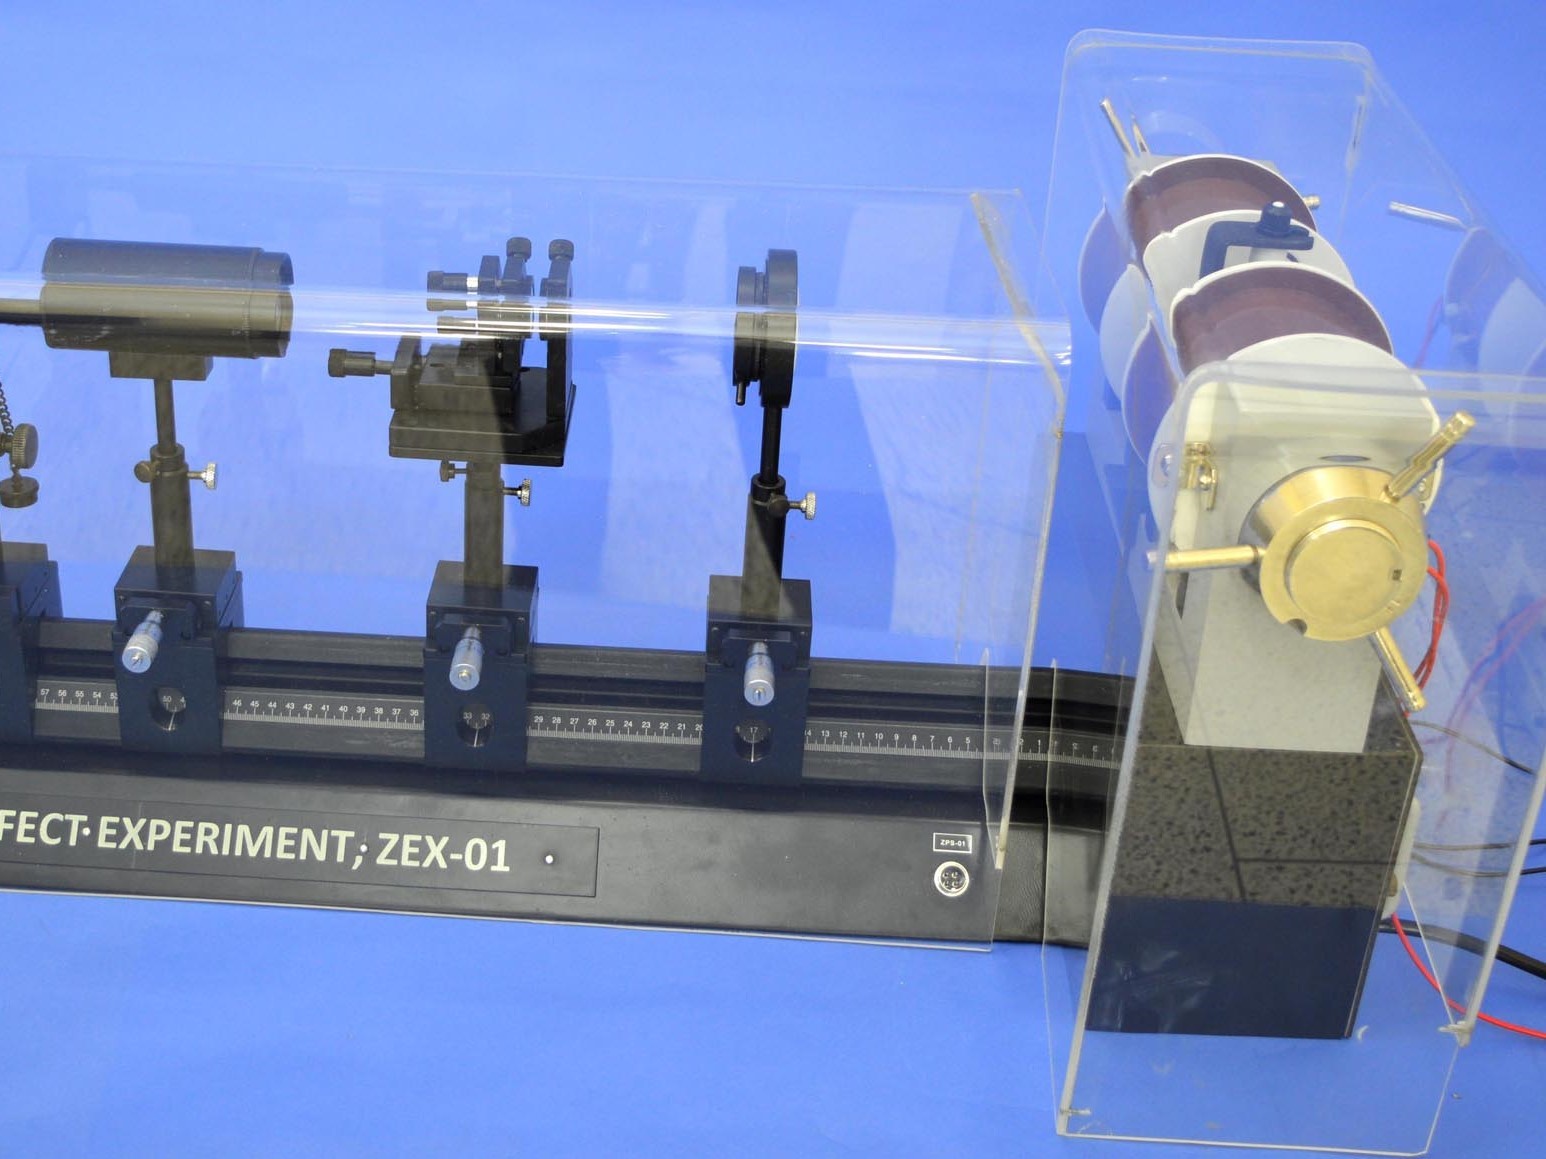 Zeeman Effect Experiment, Zex-01